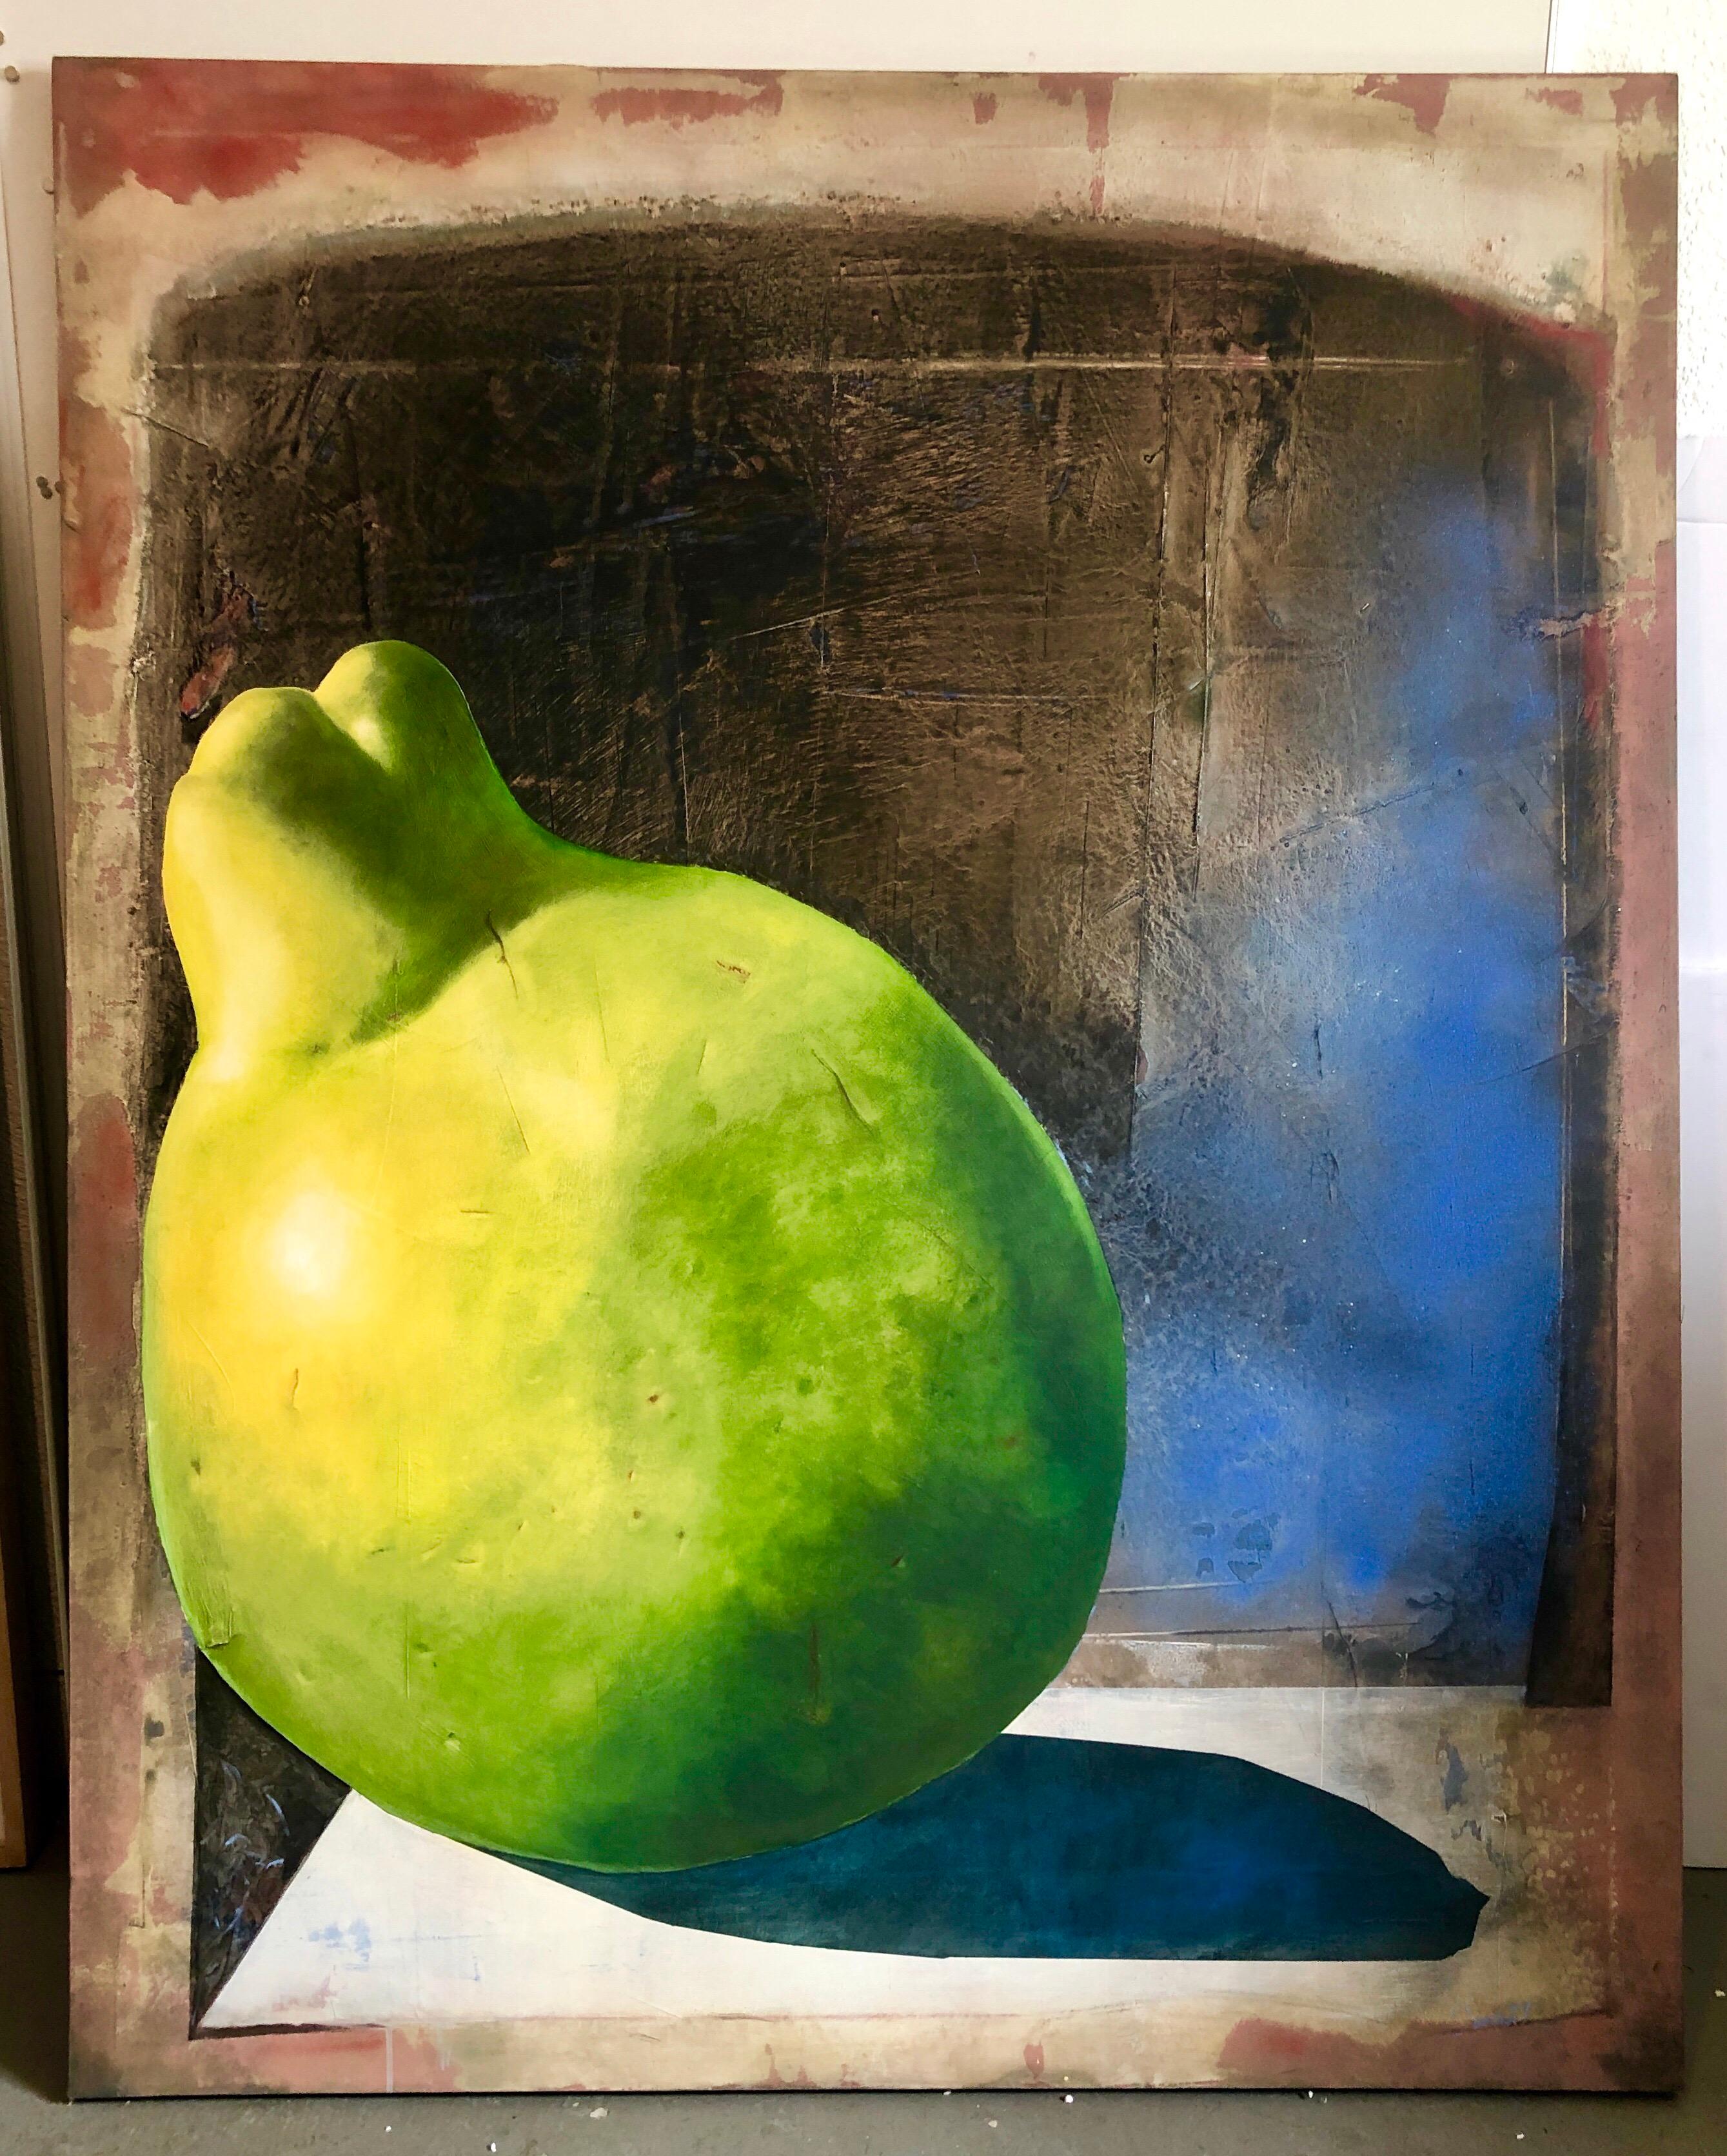 Dalva Duarte:: artiste brésilienne de femme. 
Grande peinture de fruits tropicaux ou en forme de poire. 
Dalva Duarte est née en 1949 dans le petit village de Caroline:: dans le nord du Brésil. Elle avait deux frères et trois sœurs. Quand elle avait